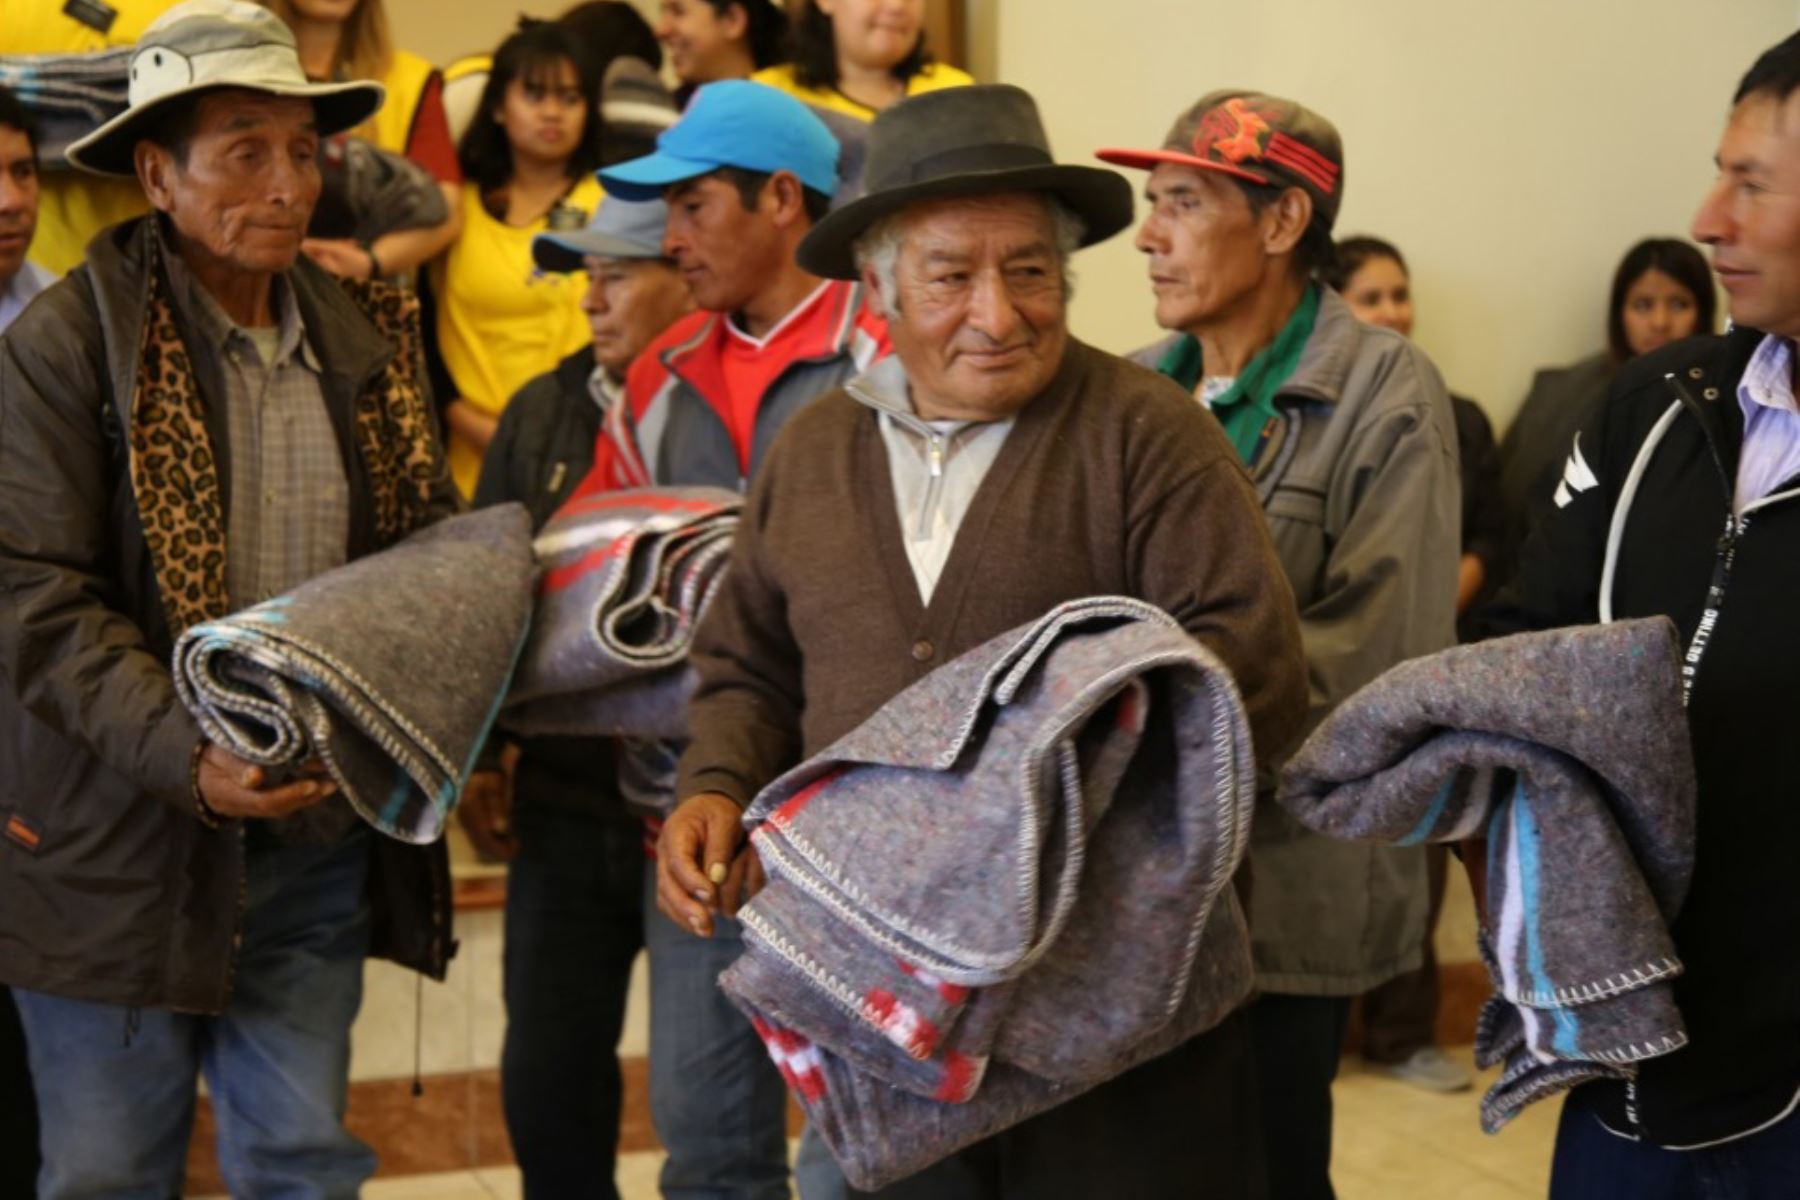 El Gobierno Regional de Ayacucho entregó de bienes de ayuda humanitaria consistente en prendas de abrigo (frazadas y colchas) a los pobladores afectados por las bajas temperaturas que se vienen registrando en el distrito de Querobamba, provincia de Sucre, informó el Indeci al Centro de Operaciones de Emergencia Nacional (COEN).